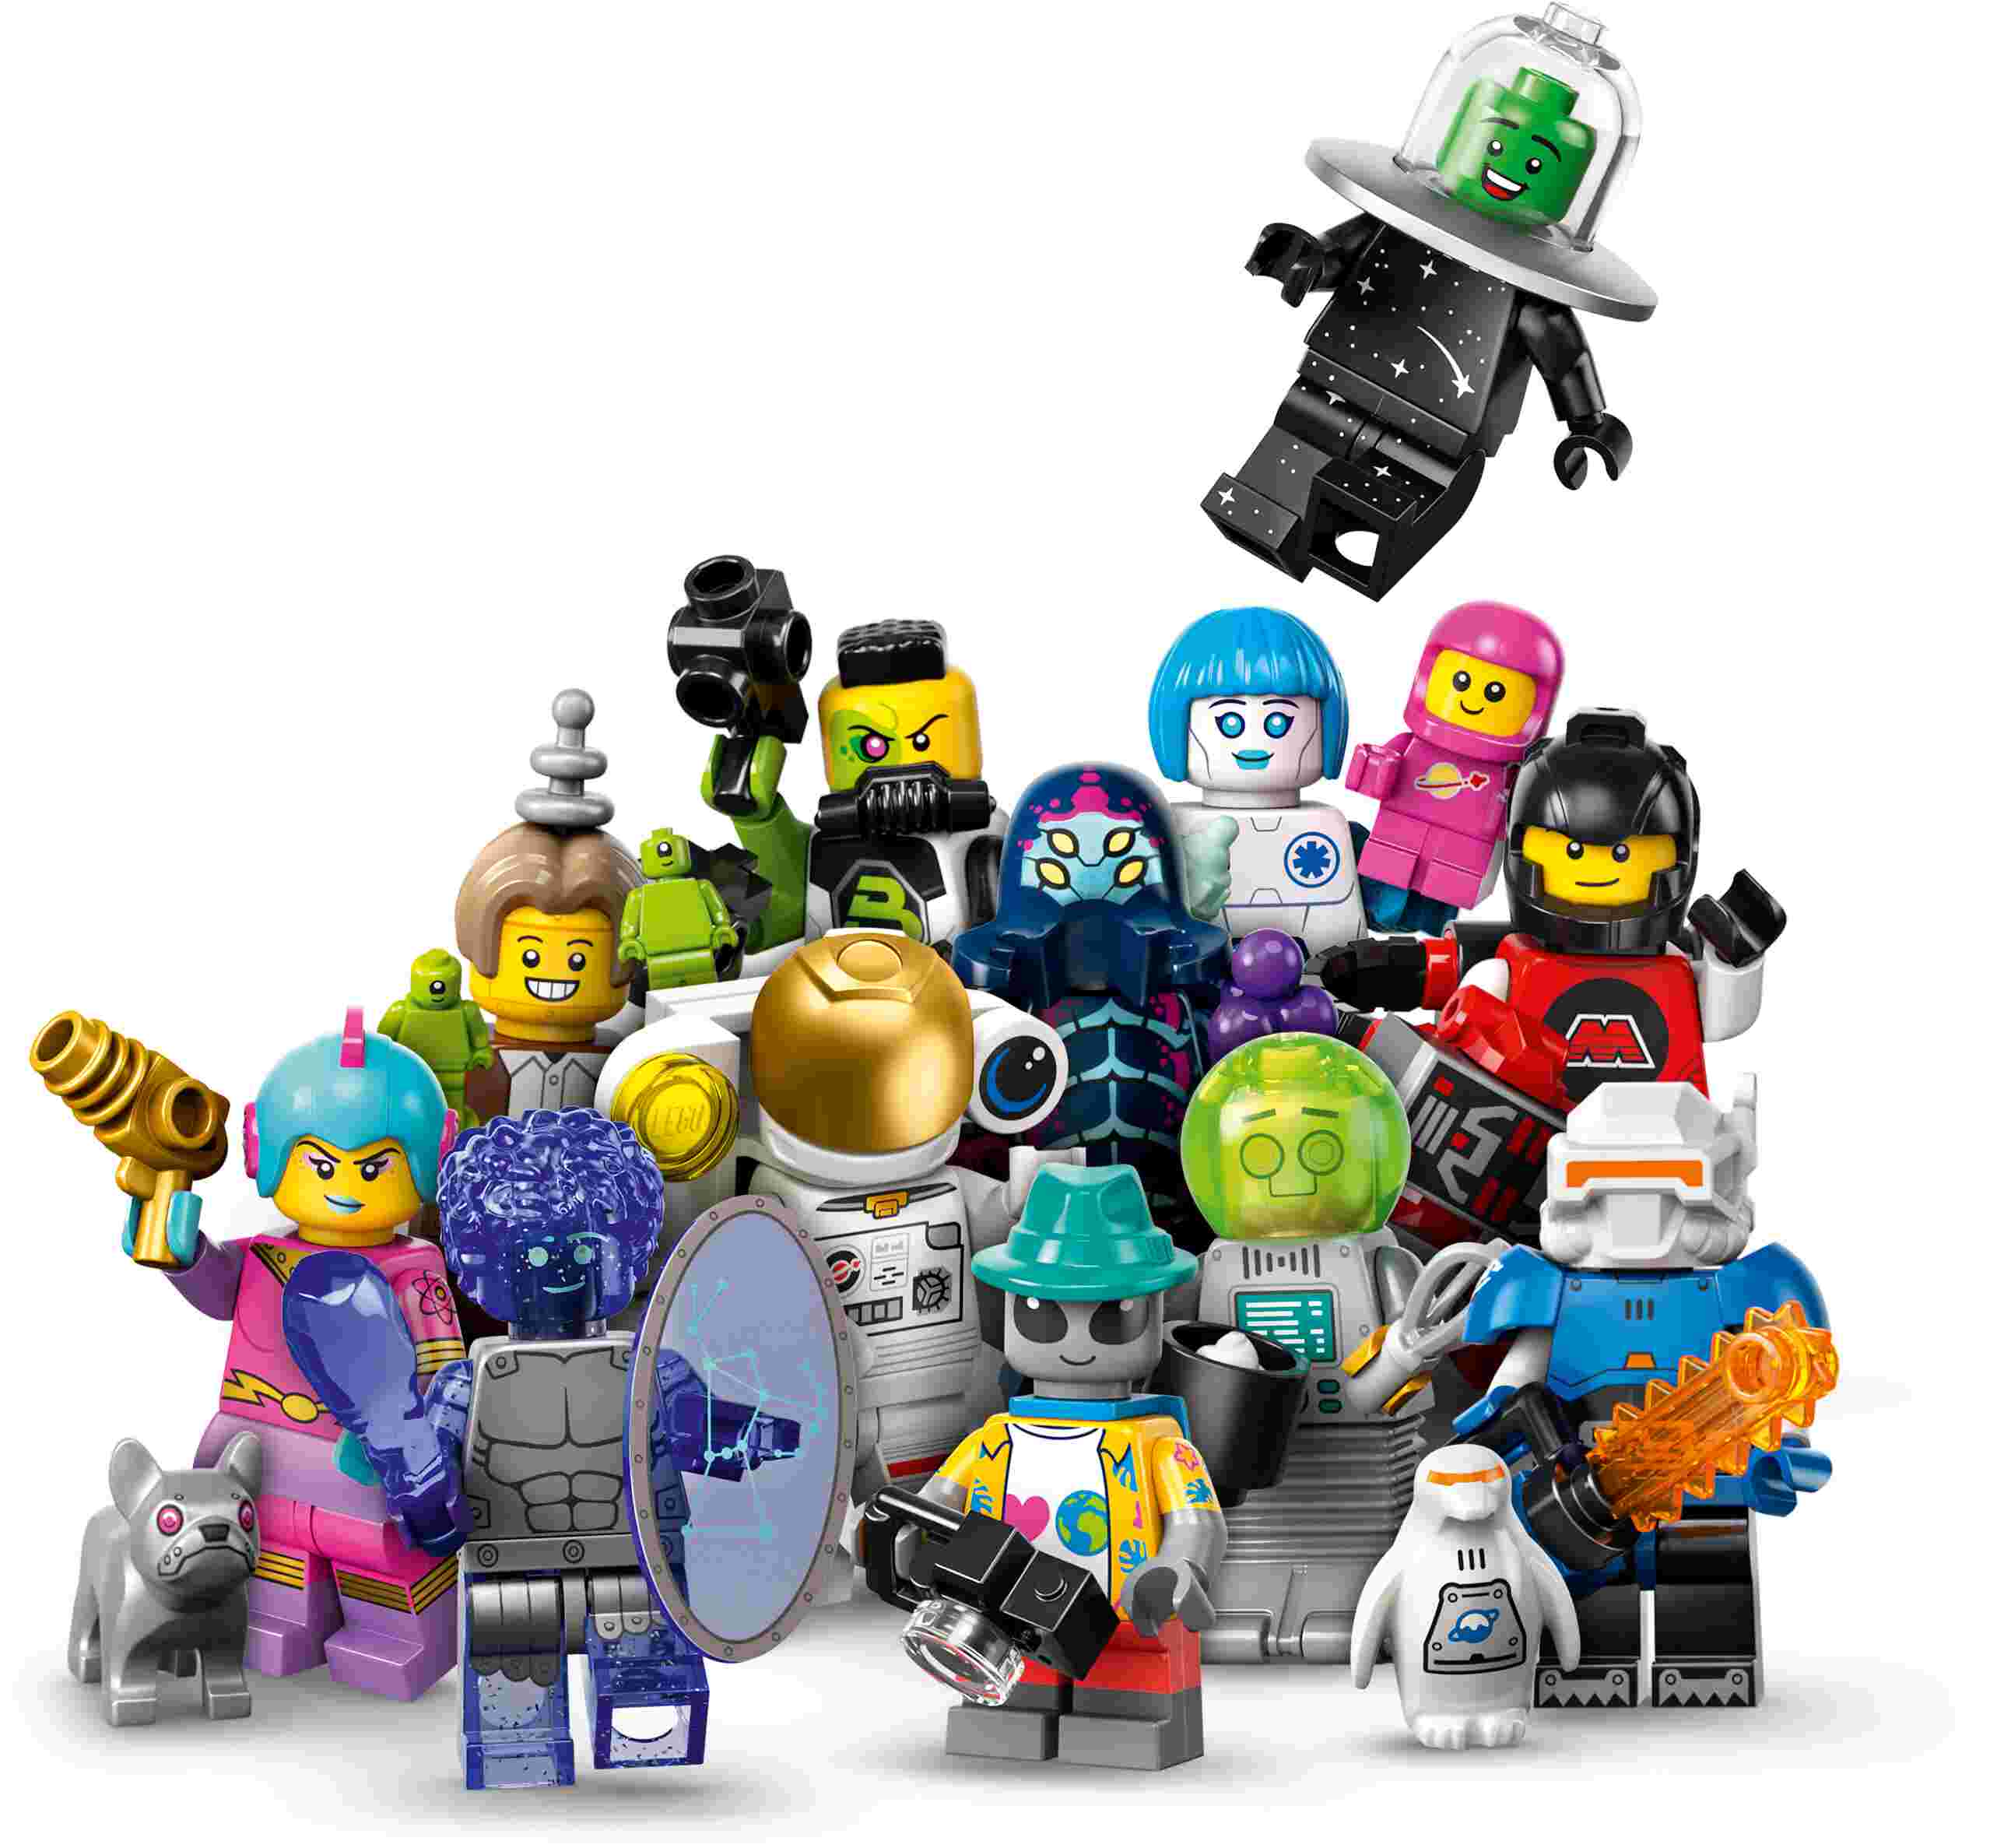 LEGO 71046 Minifigures Weltraum Serie 26, Überraschungsbox mit 1 von 12 Figuren